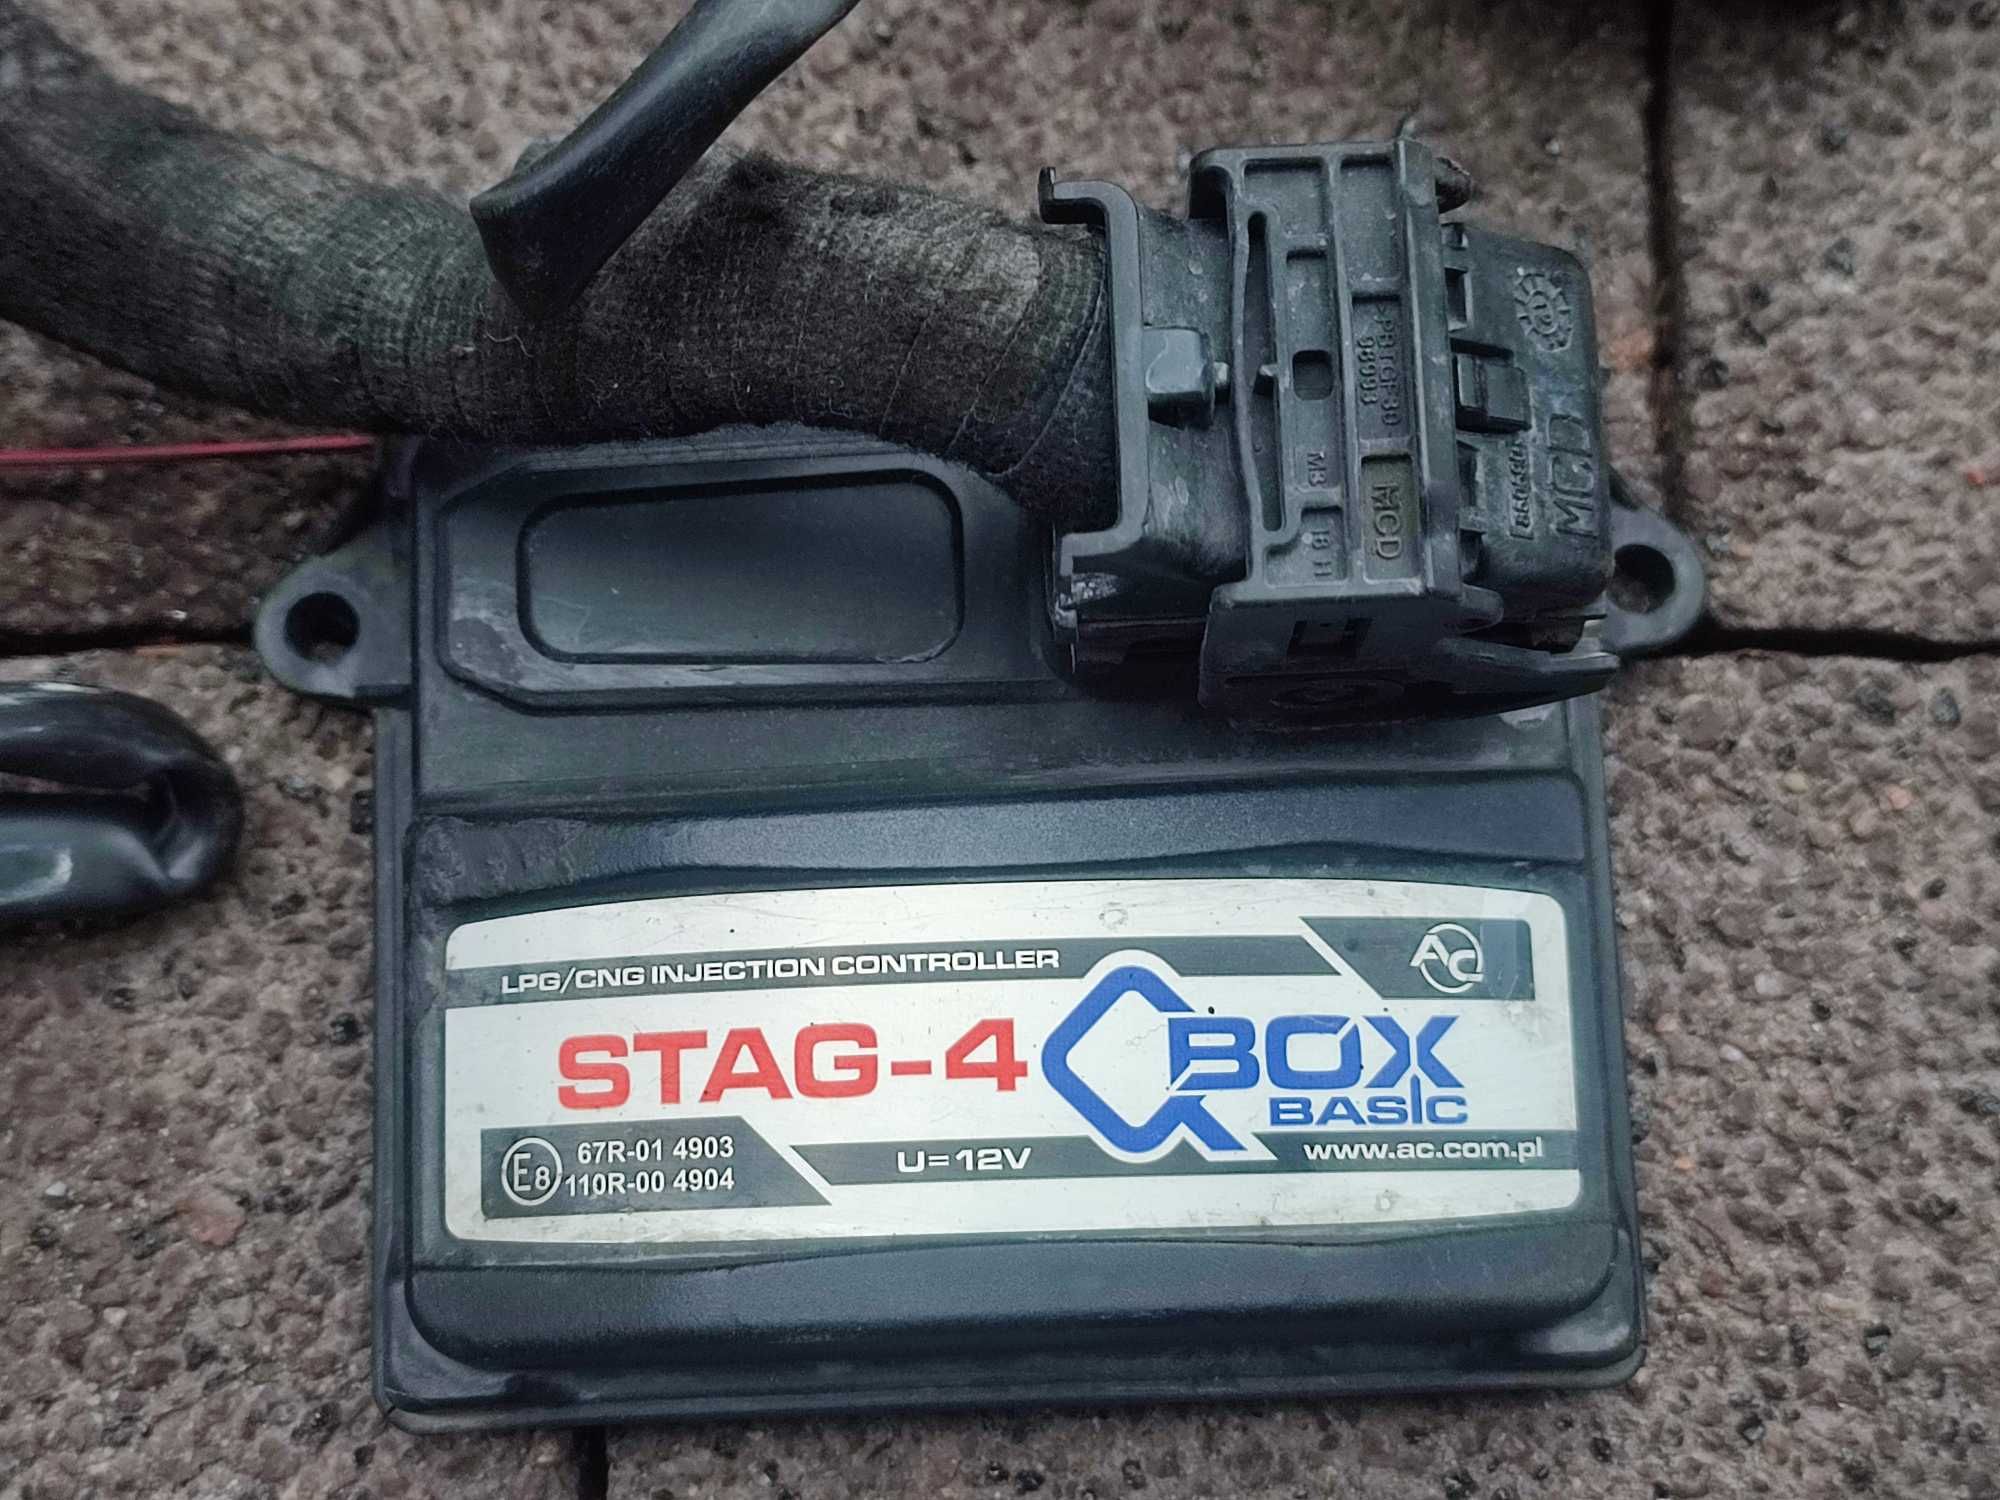 Instalacja Gazowa Stag-4 QBox Basic